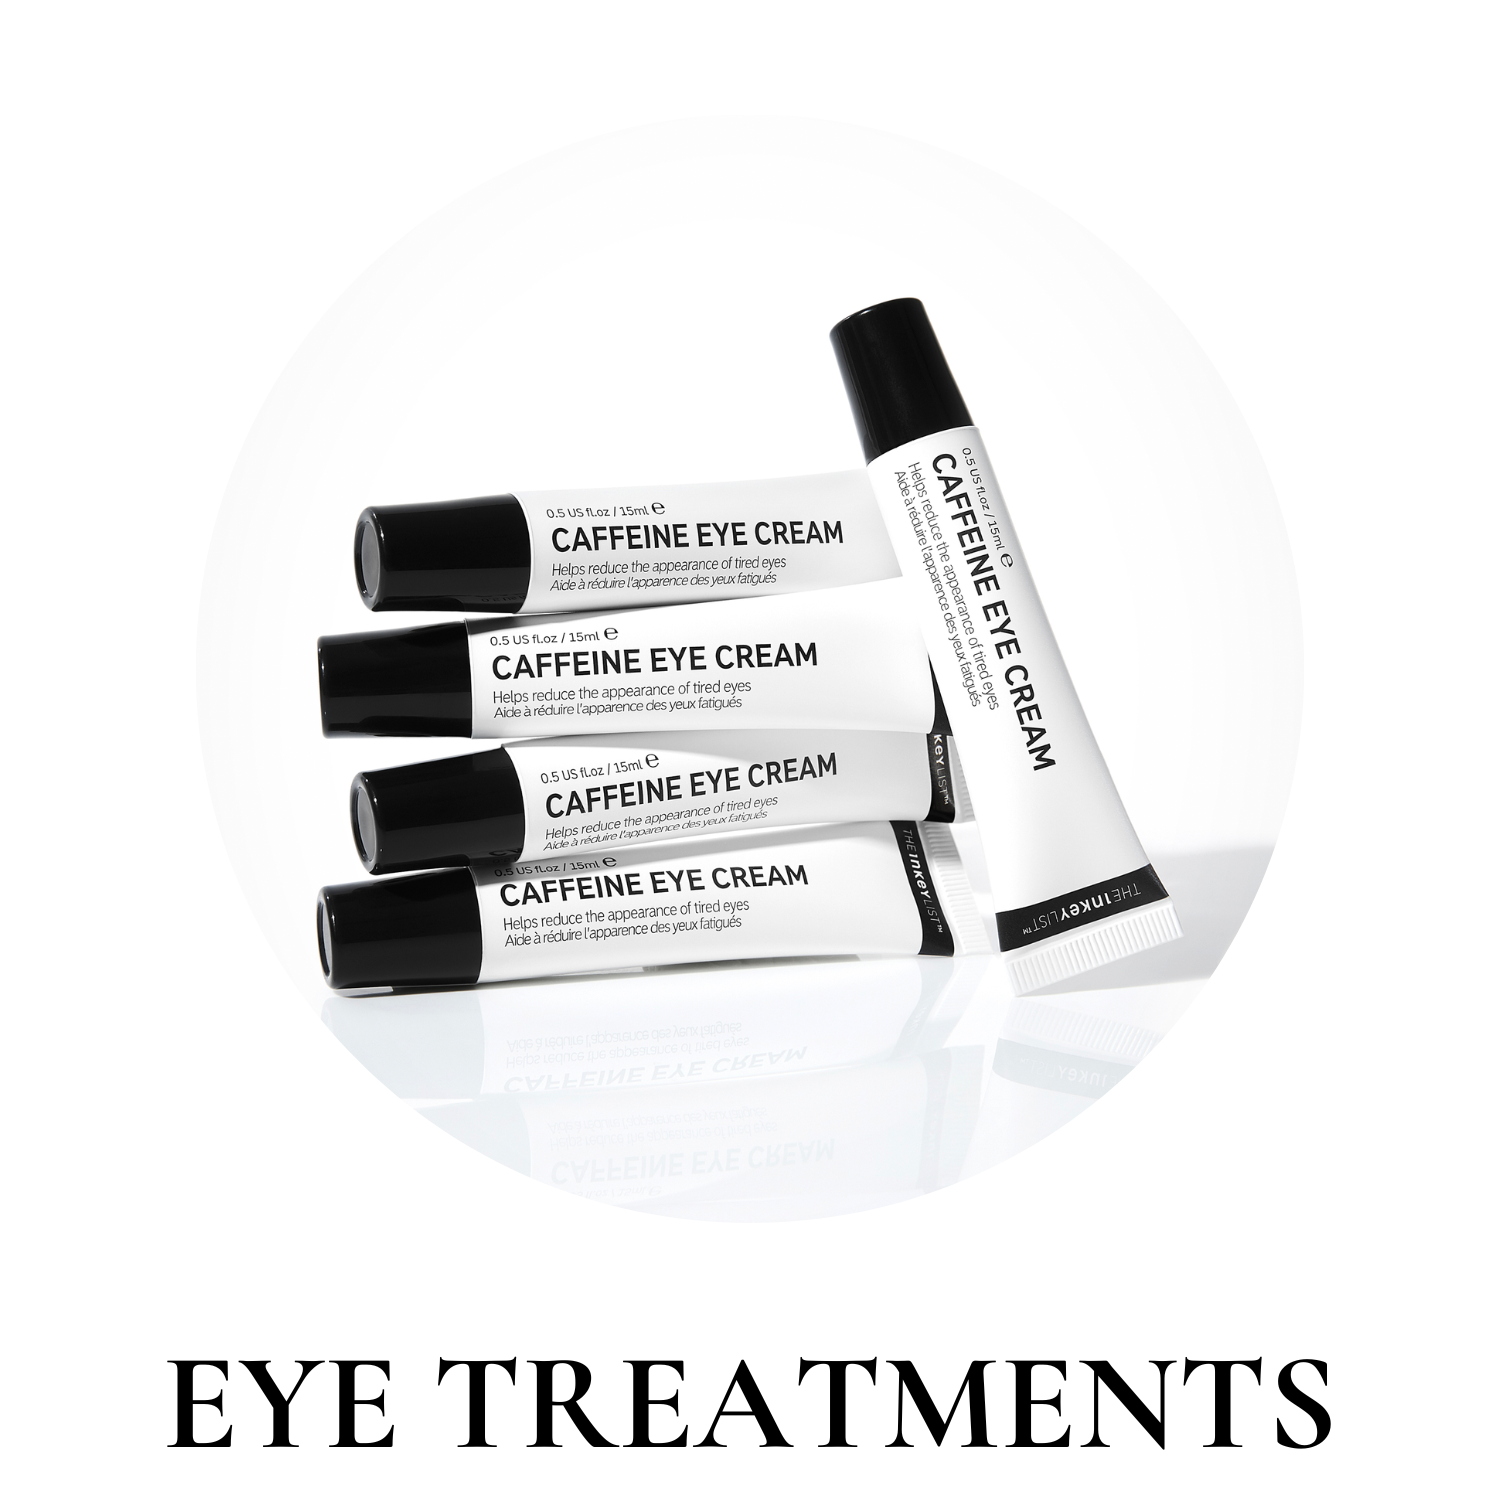 inkey list eye treatments